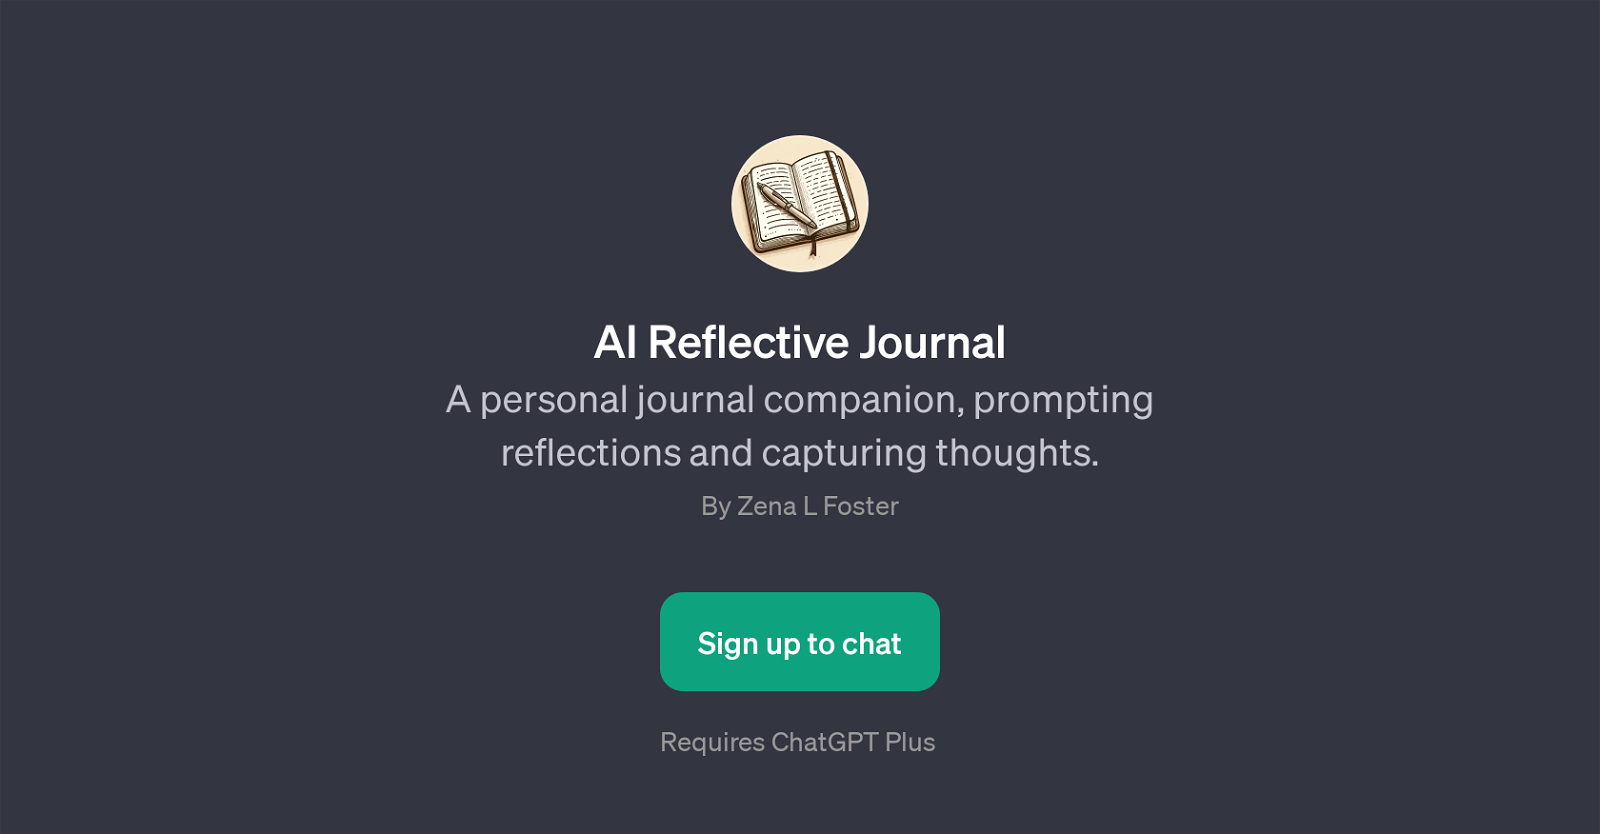 AI Reflective Journal website